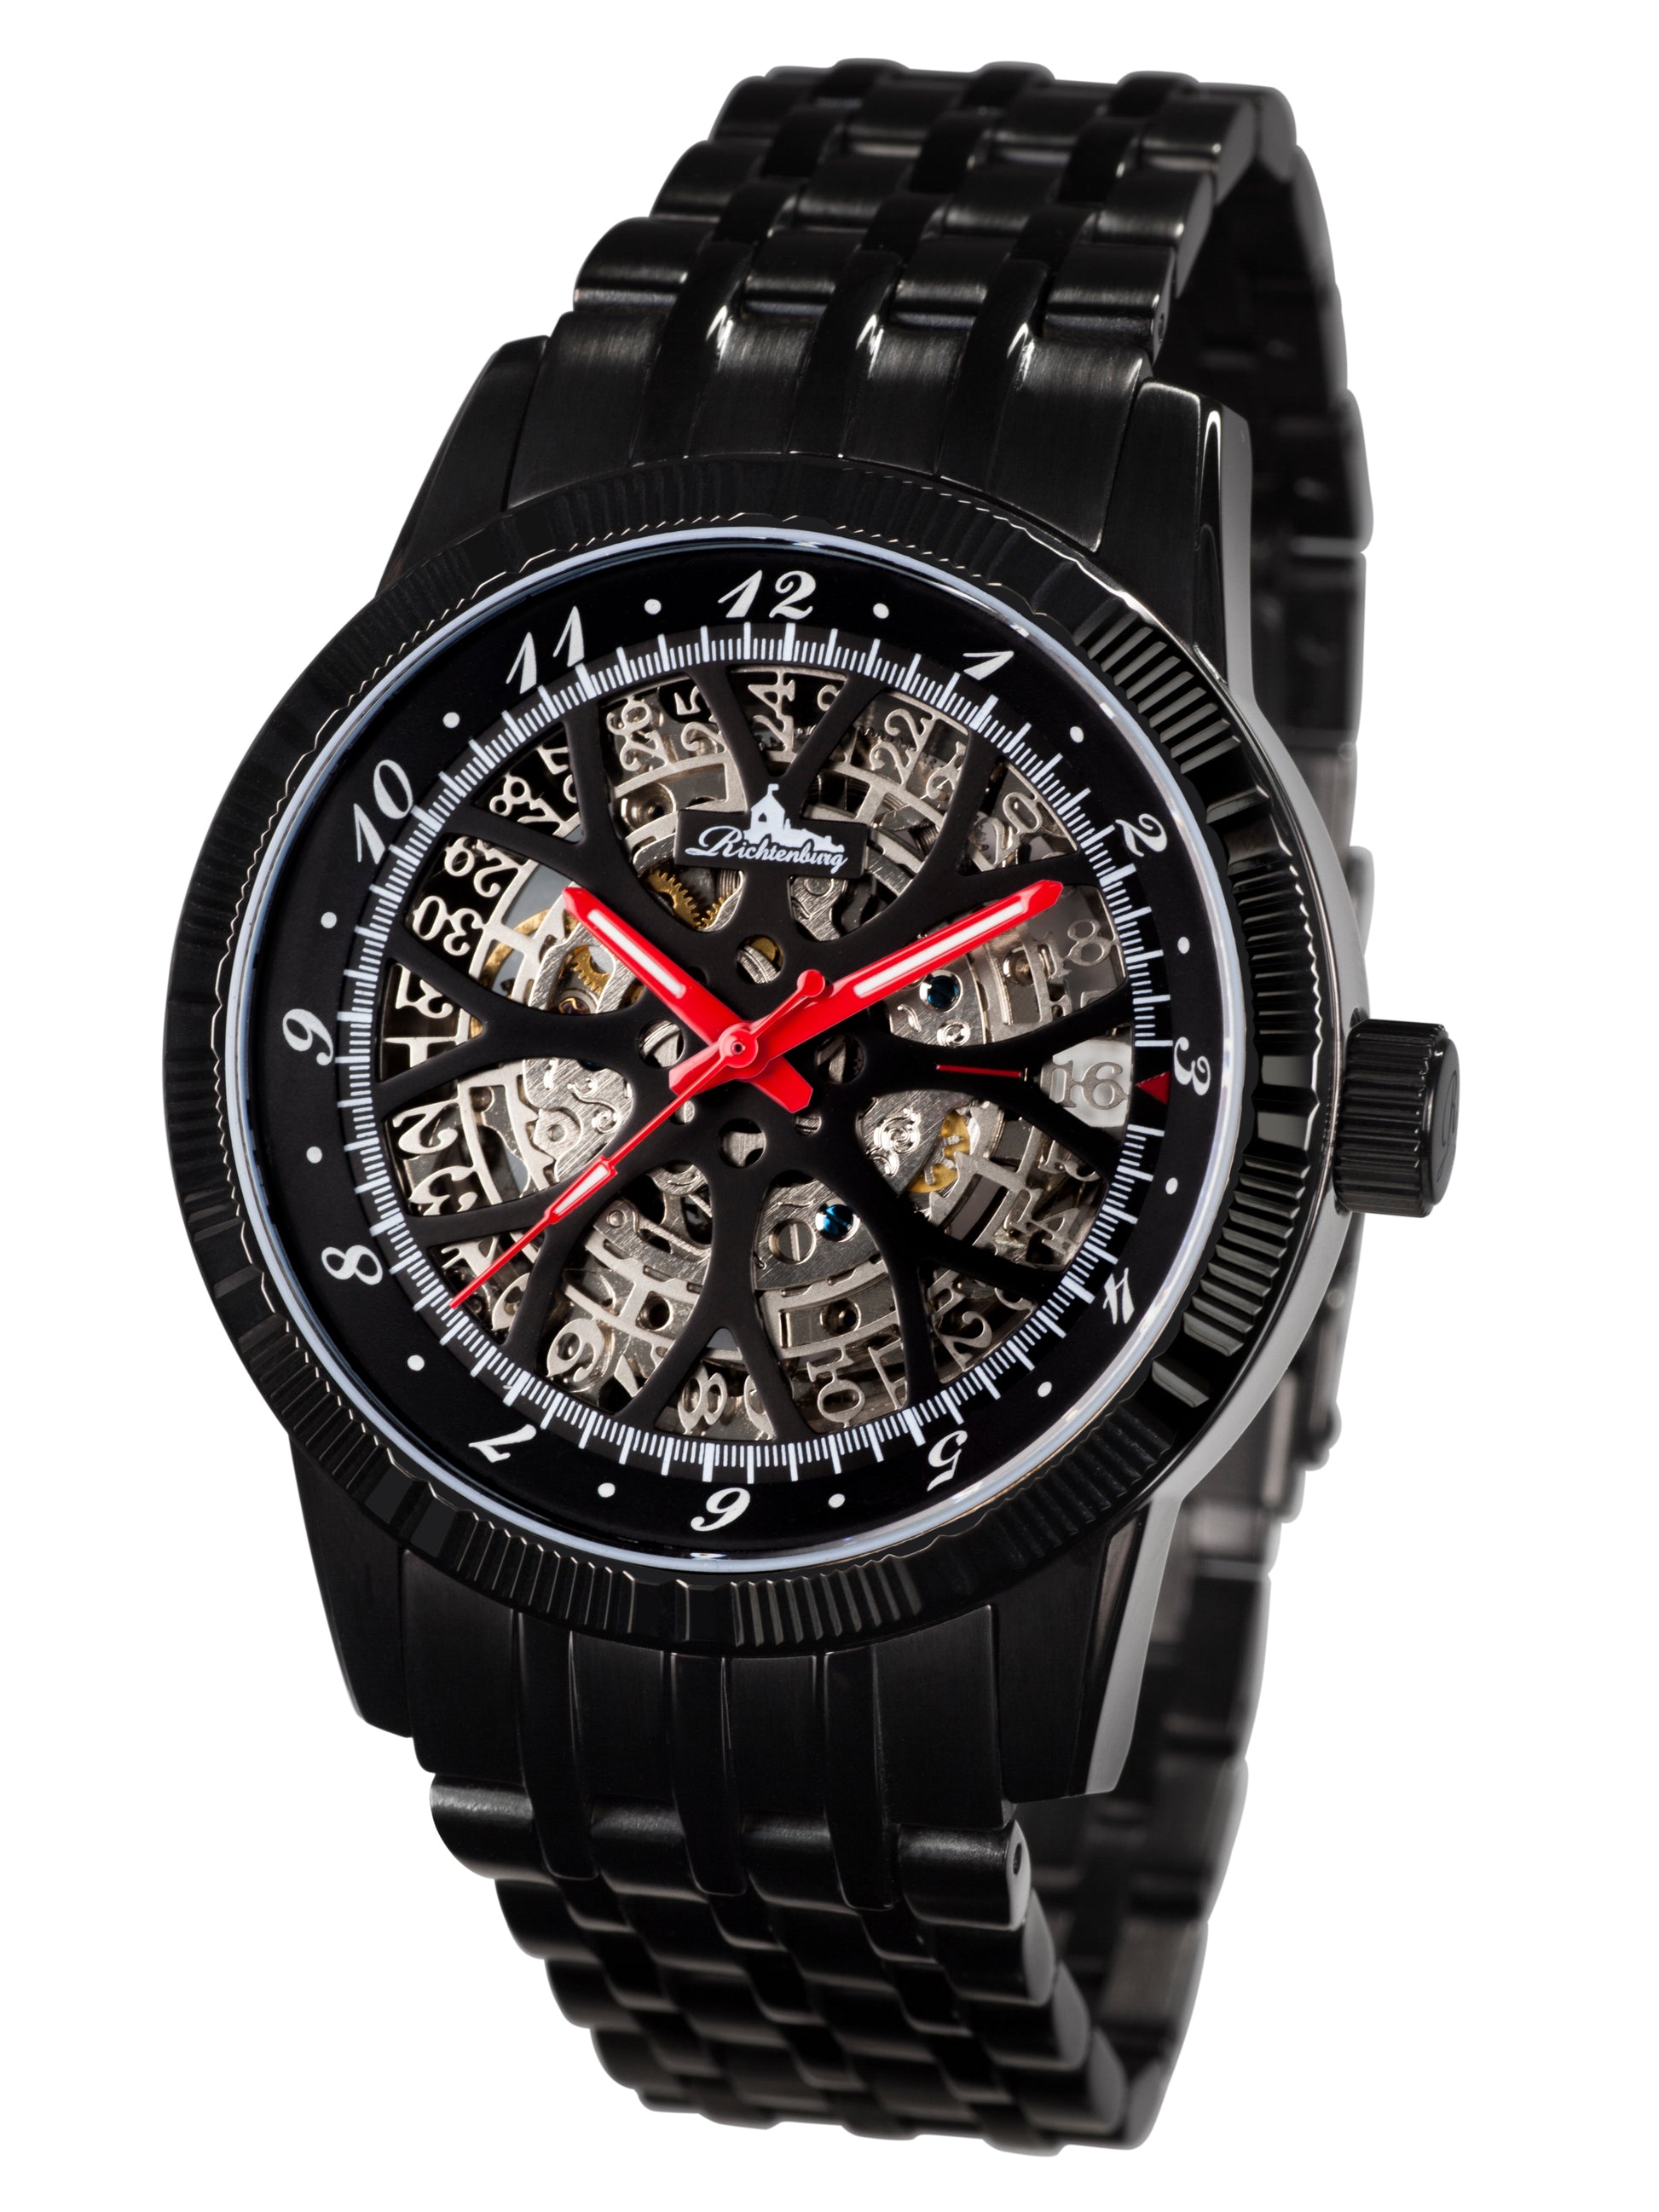 Automatic watches — Speedwheel — Richtenburg — gold IP